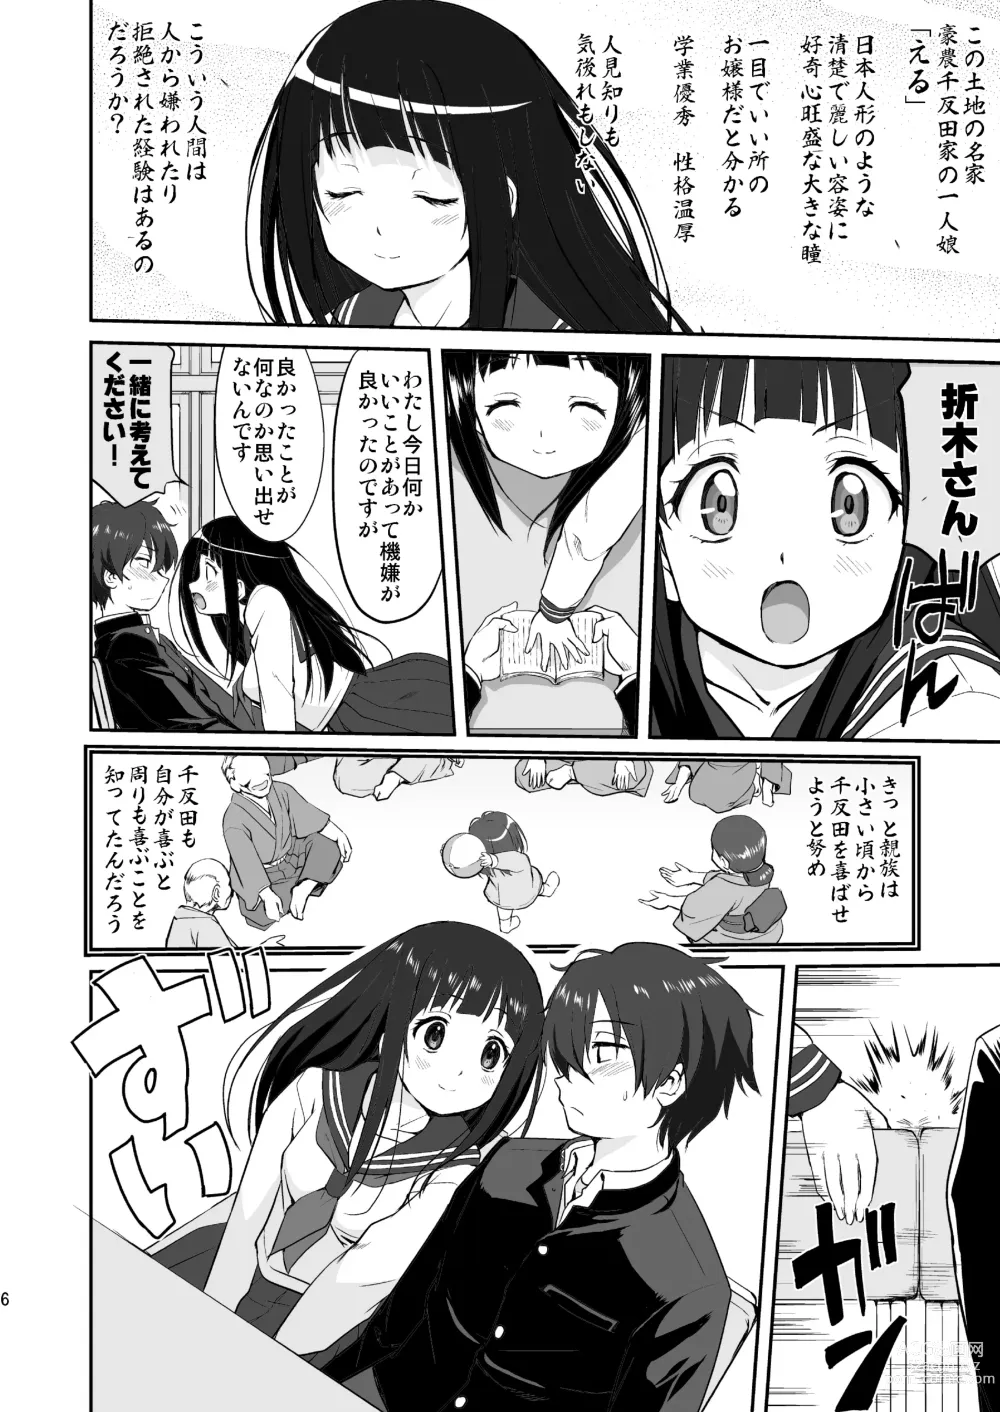 Page 6 of doujinshi Hikari no Ame